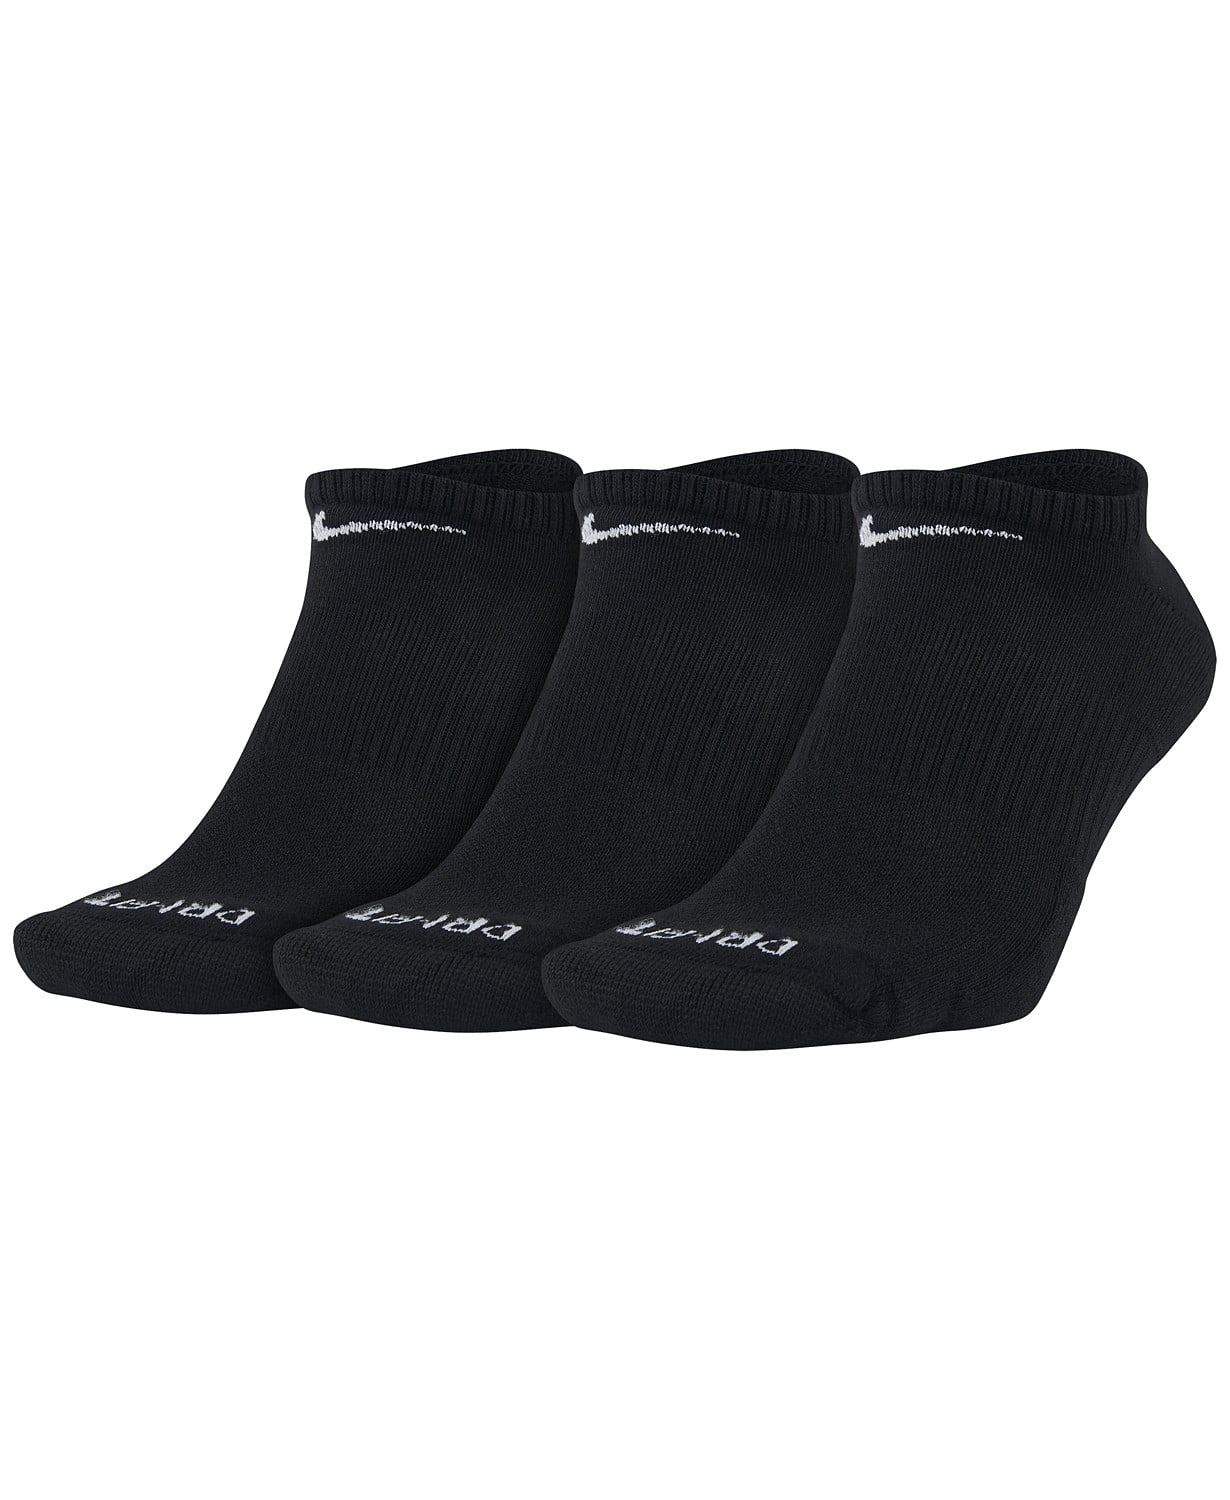 Nike Everyday Plus Cushion Training Socks 3-Pack Black Size Large ...